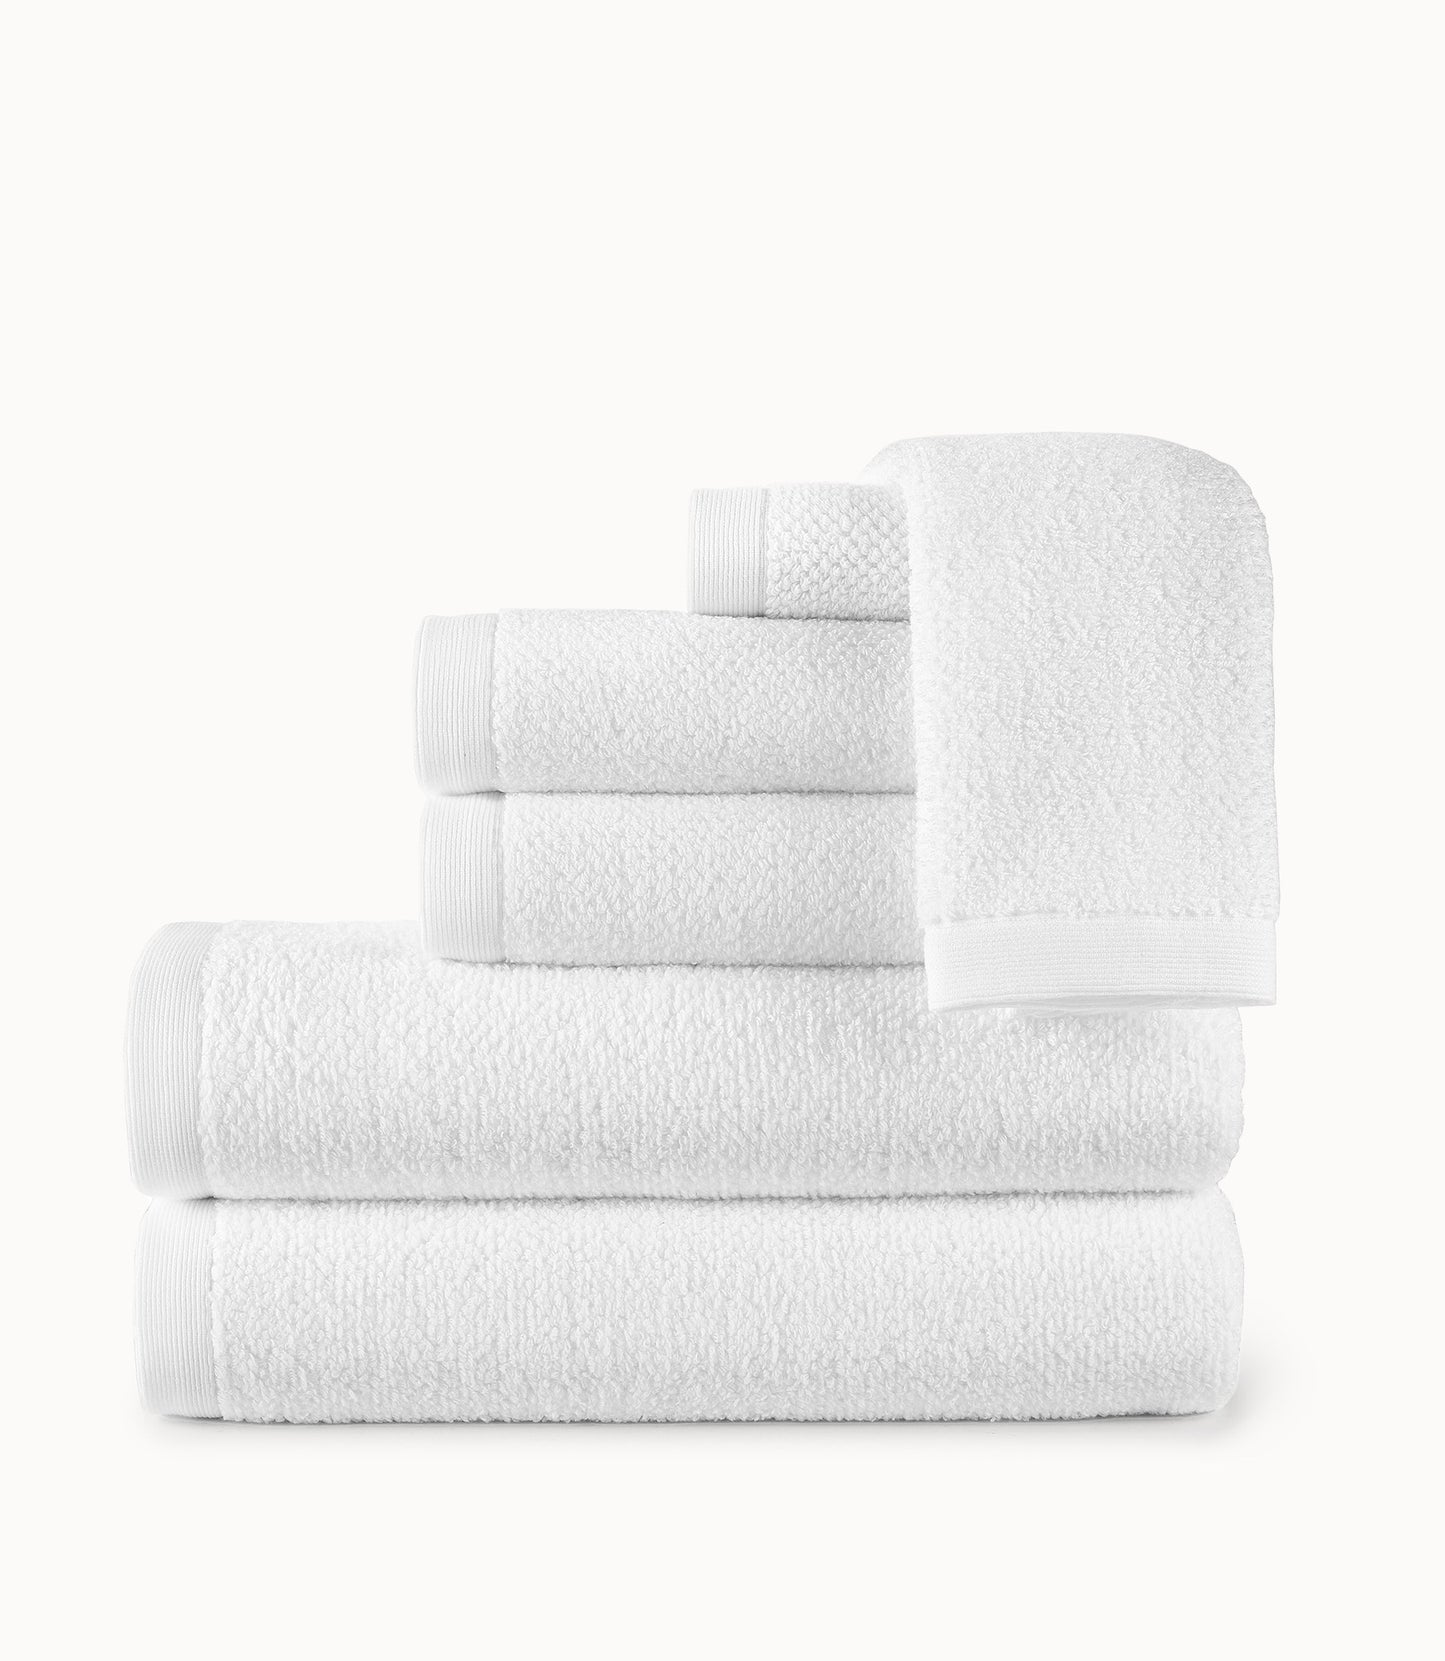 https://www.peacockalley.com/cdn/shop/products/Jubilee-Towels_White.jpg?v=1667004547&width=1445